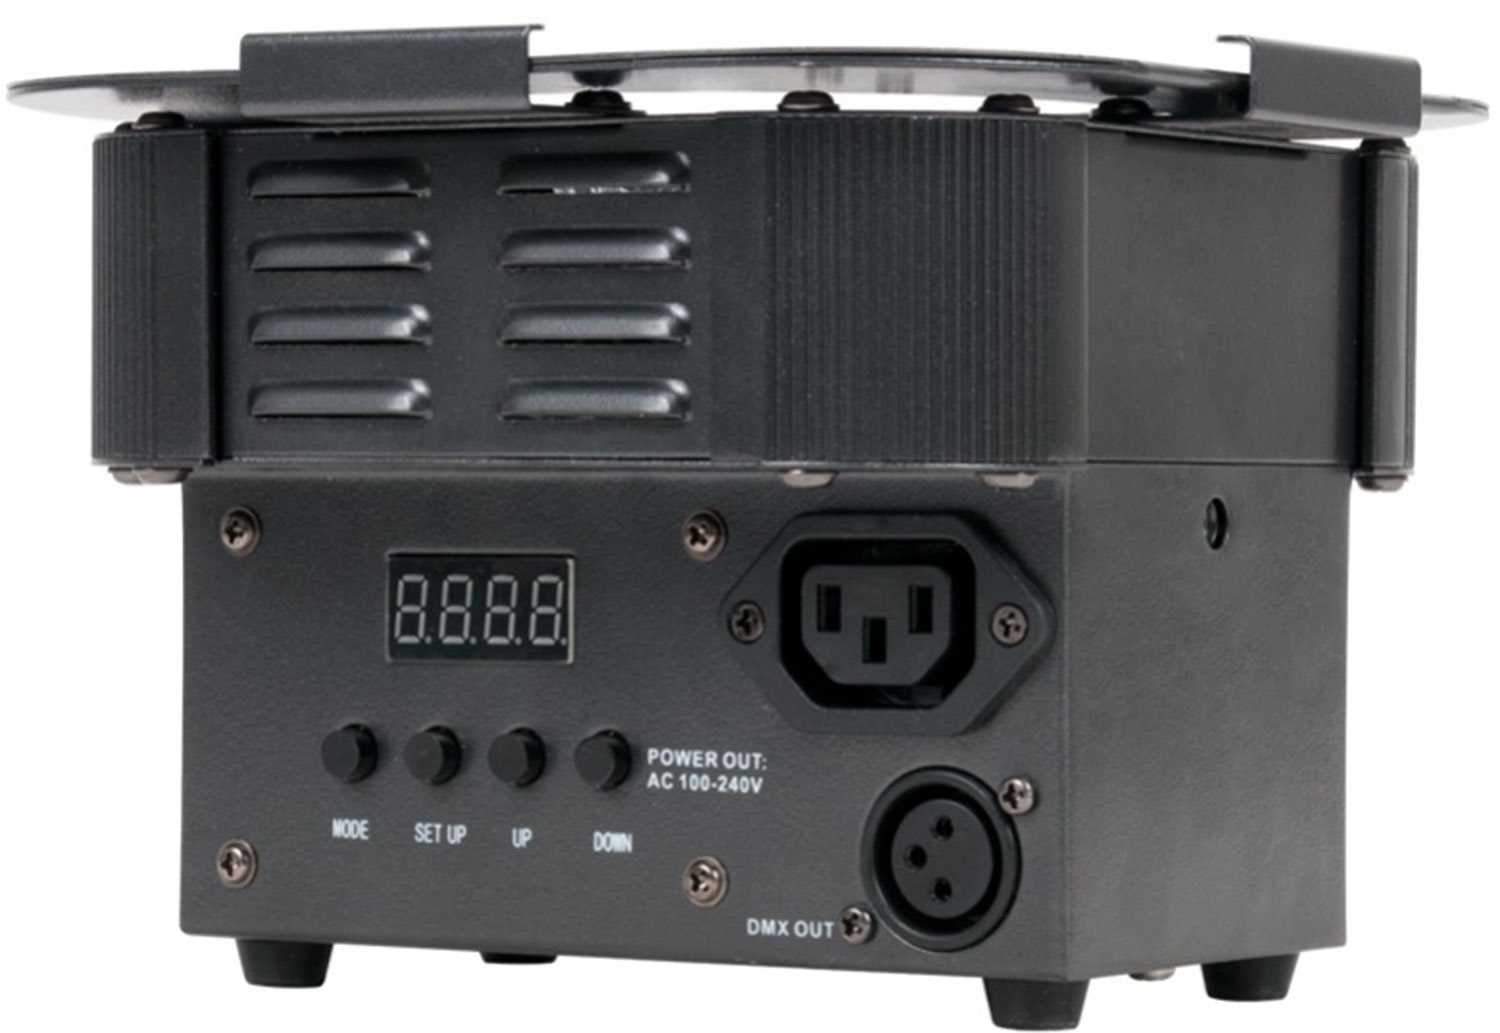 ADJ American DJ Ultra Hex Par 3 LED Wash Light 8-Pack with DMX Controller - PSSL ProSound and Stage Lighting